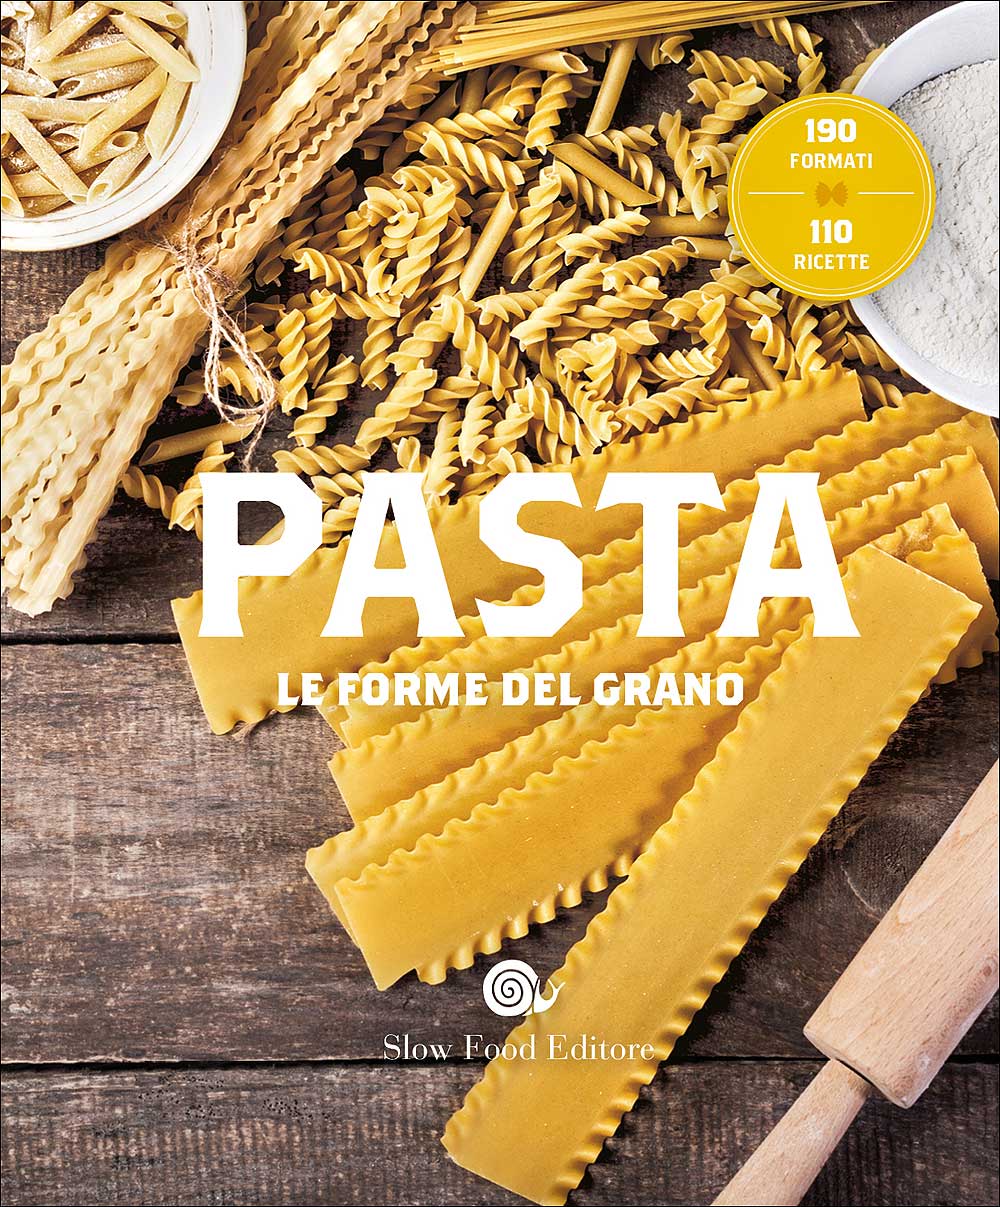 Pasta. Le forme del grano::190 formati - 110 ricette